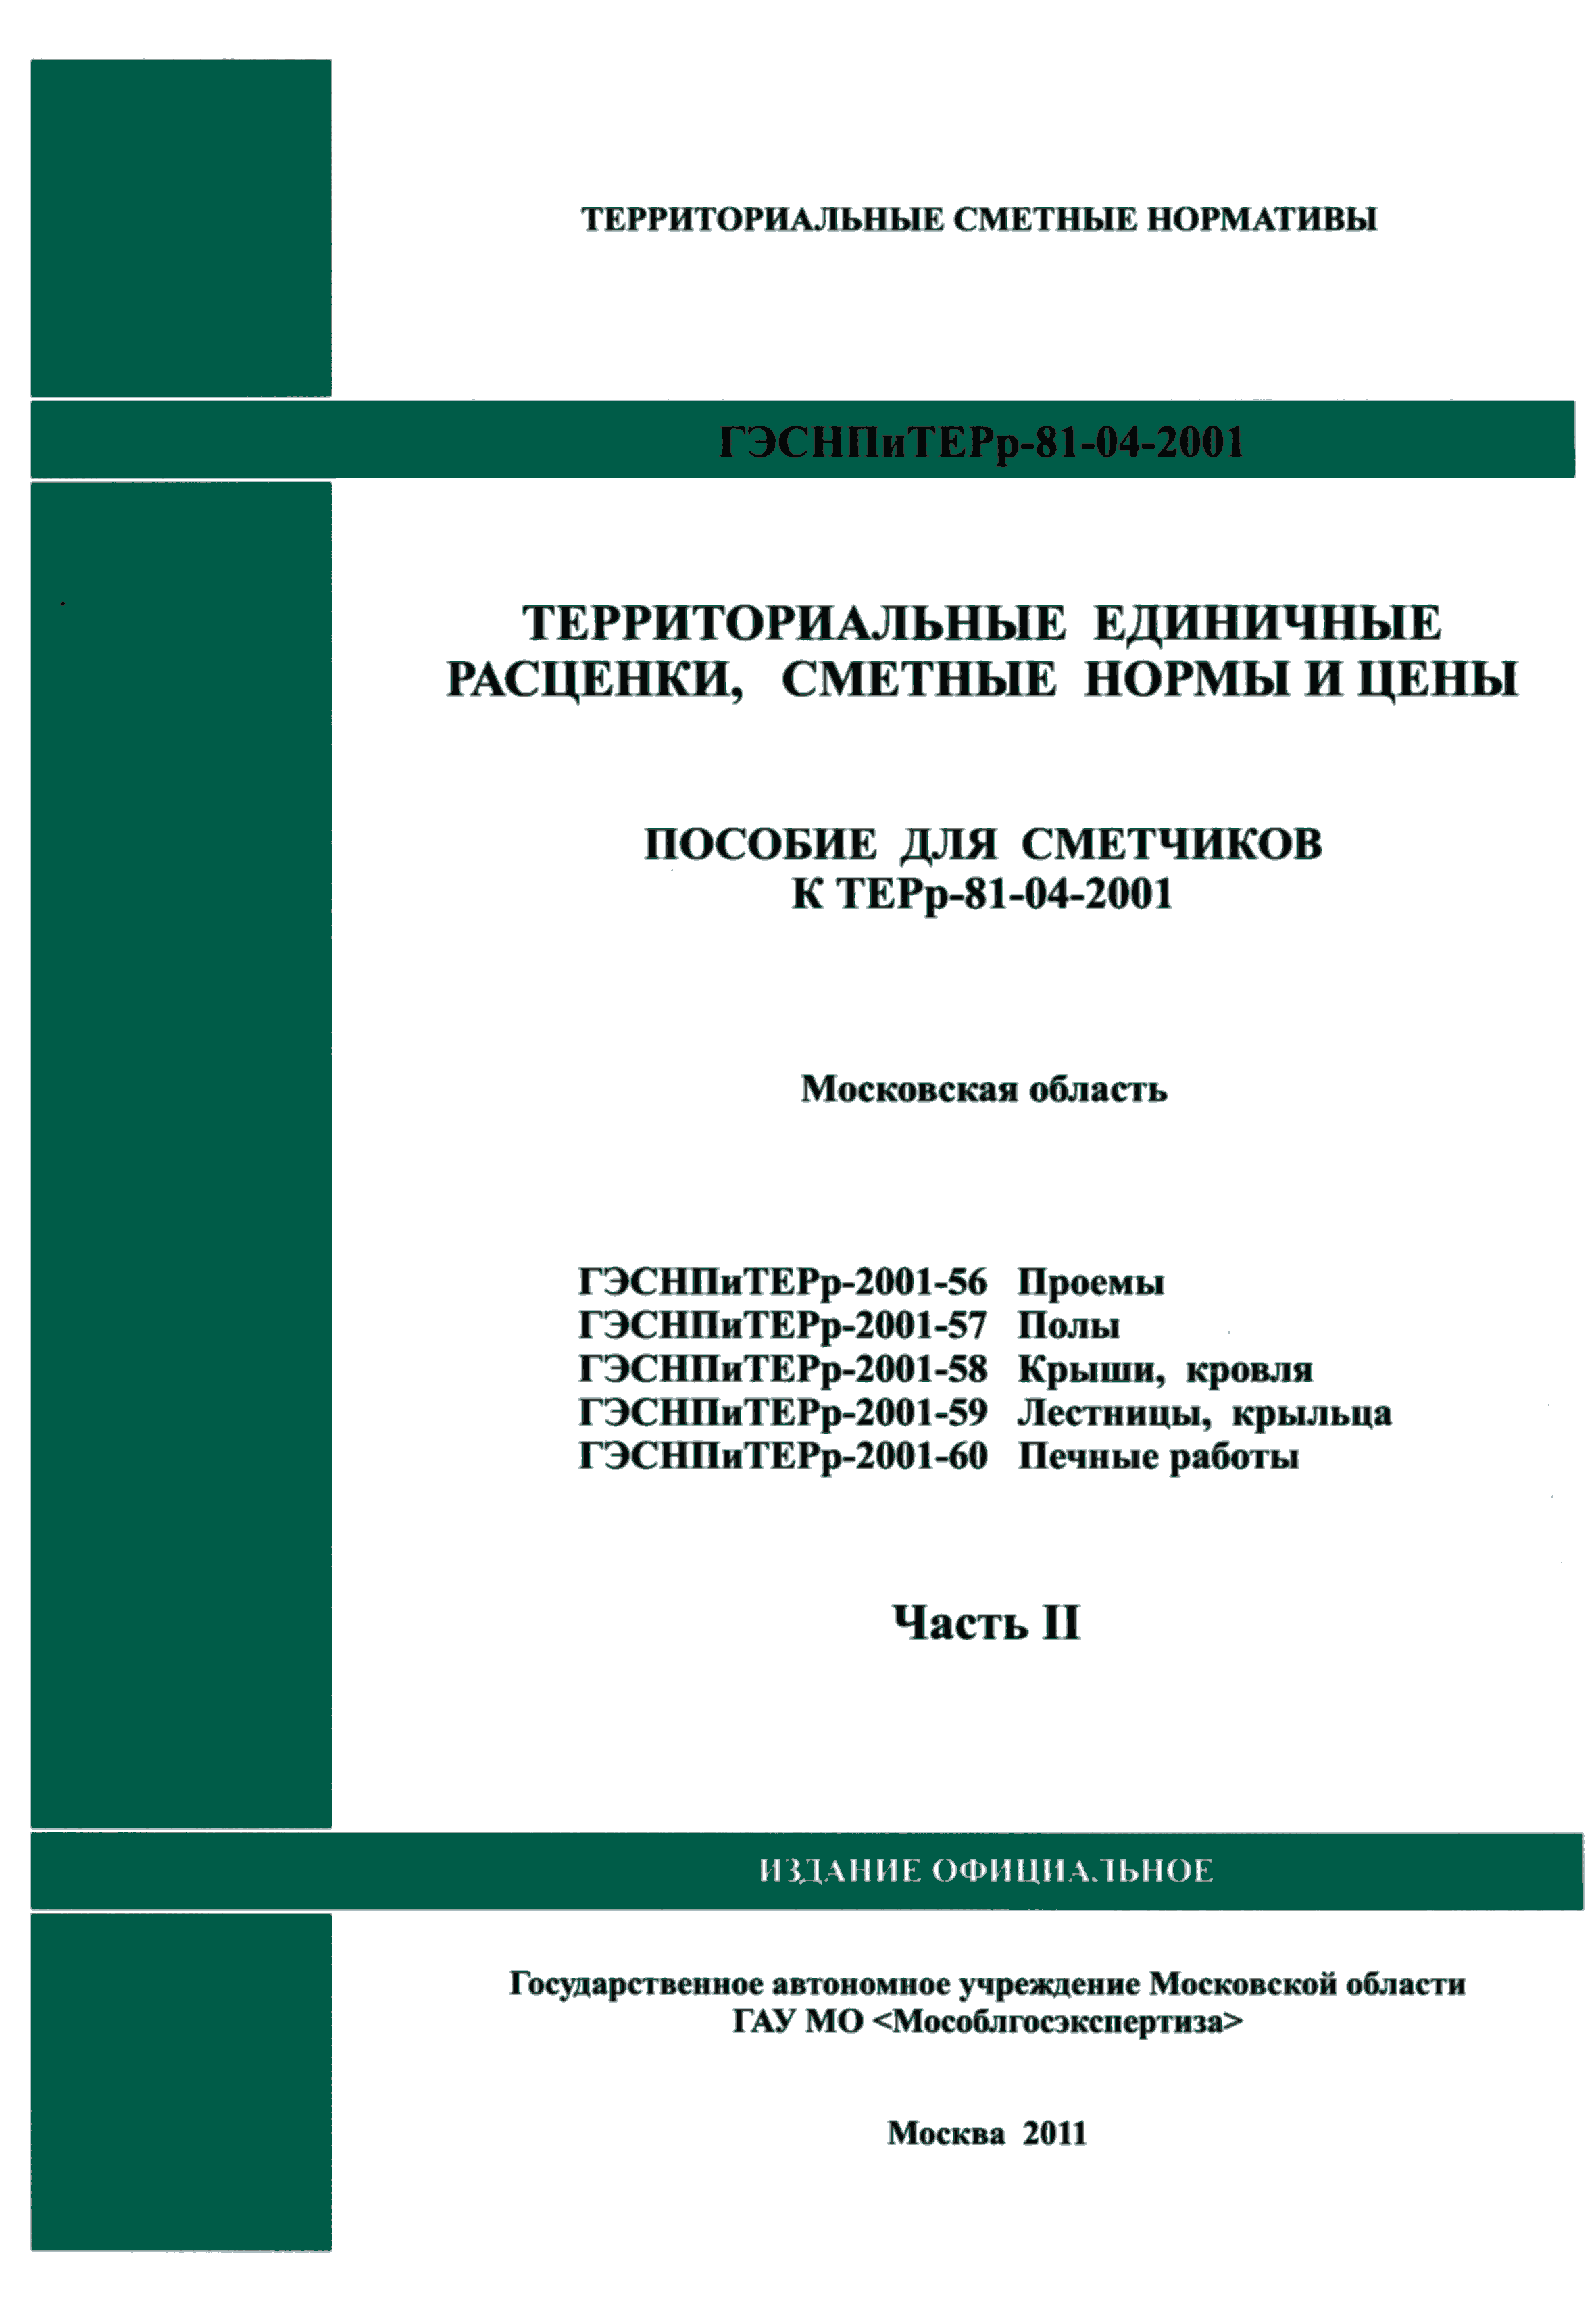 ГЭСНПиТЕРр 2001-56 Московской области